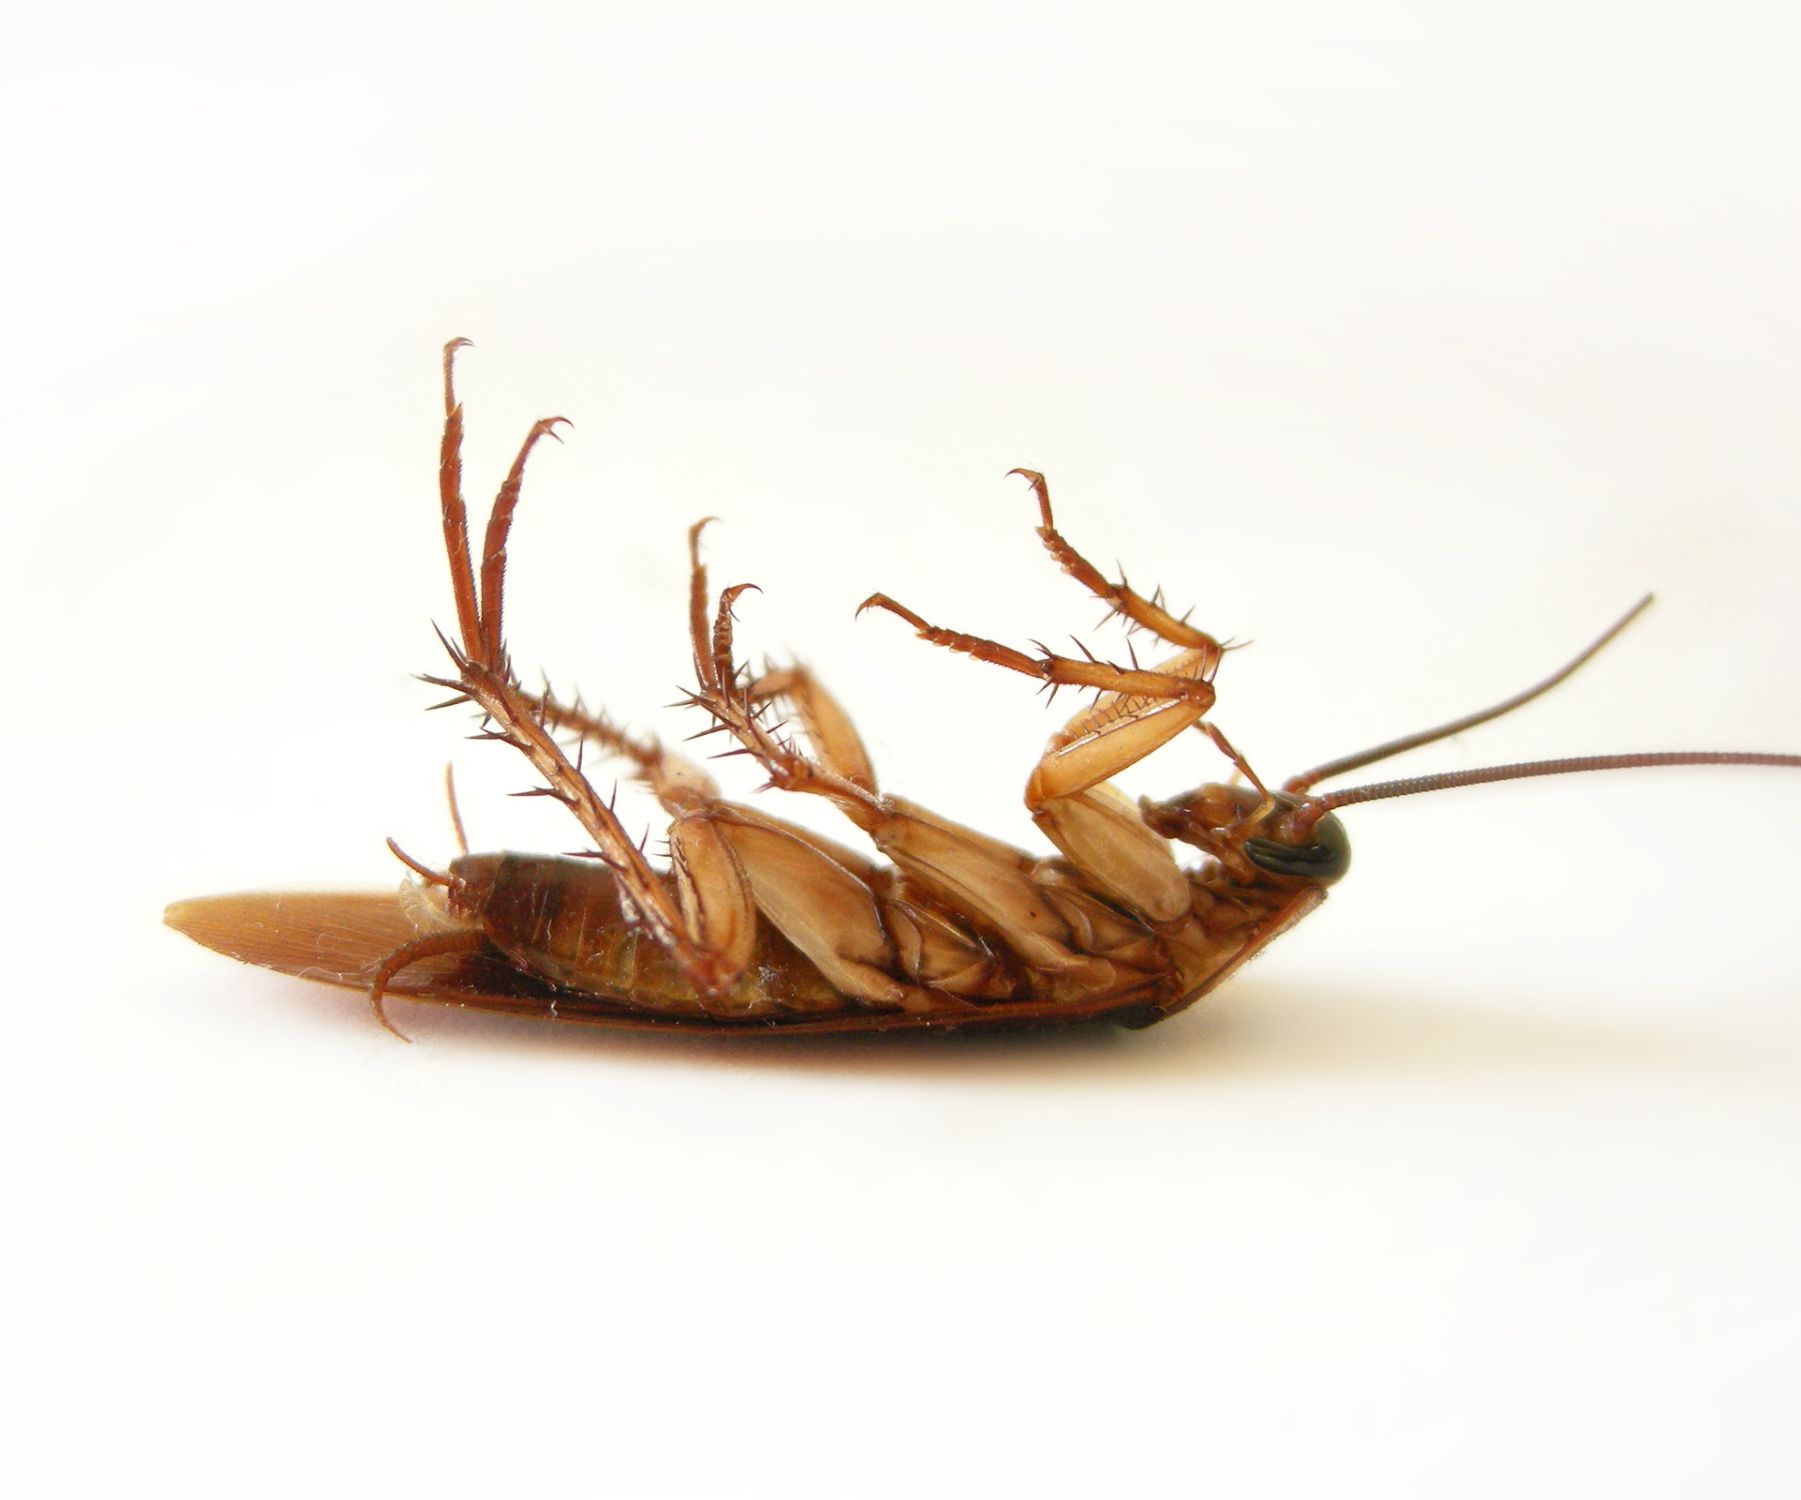 Do Cockroaches Really Spread Disease